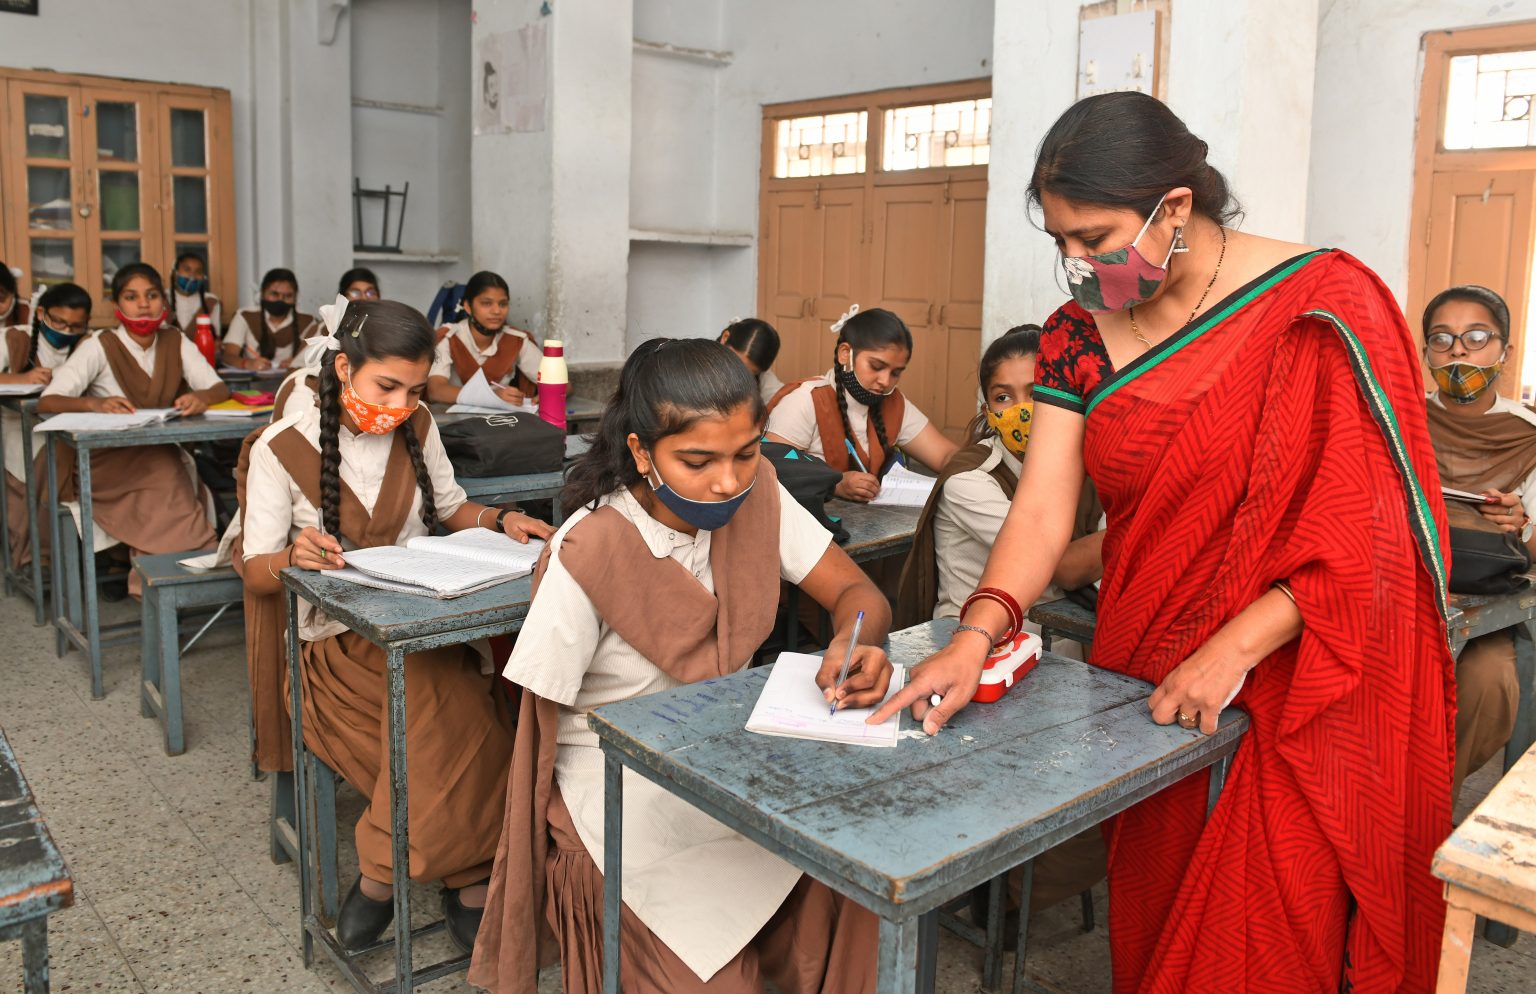 ett klassrum där flera flickor sitter vid skolbänkar, läraren står vid en av bänkarna och hjälper en av flickorna som saknar en arm